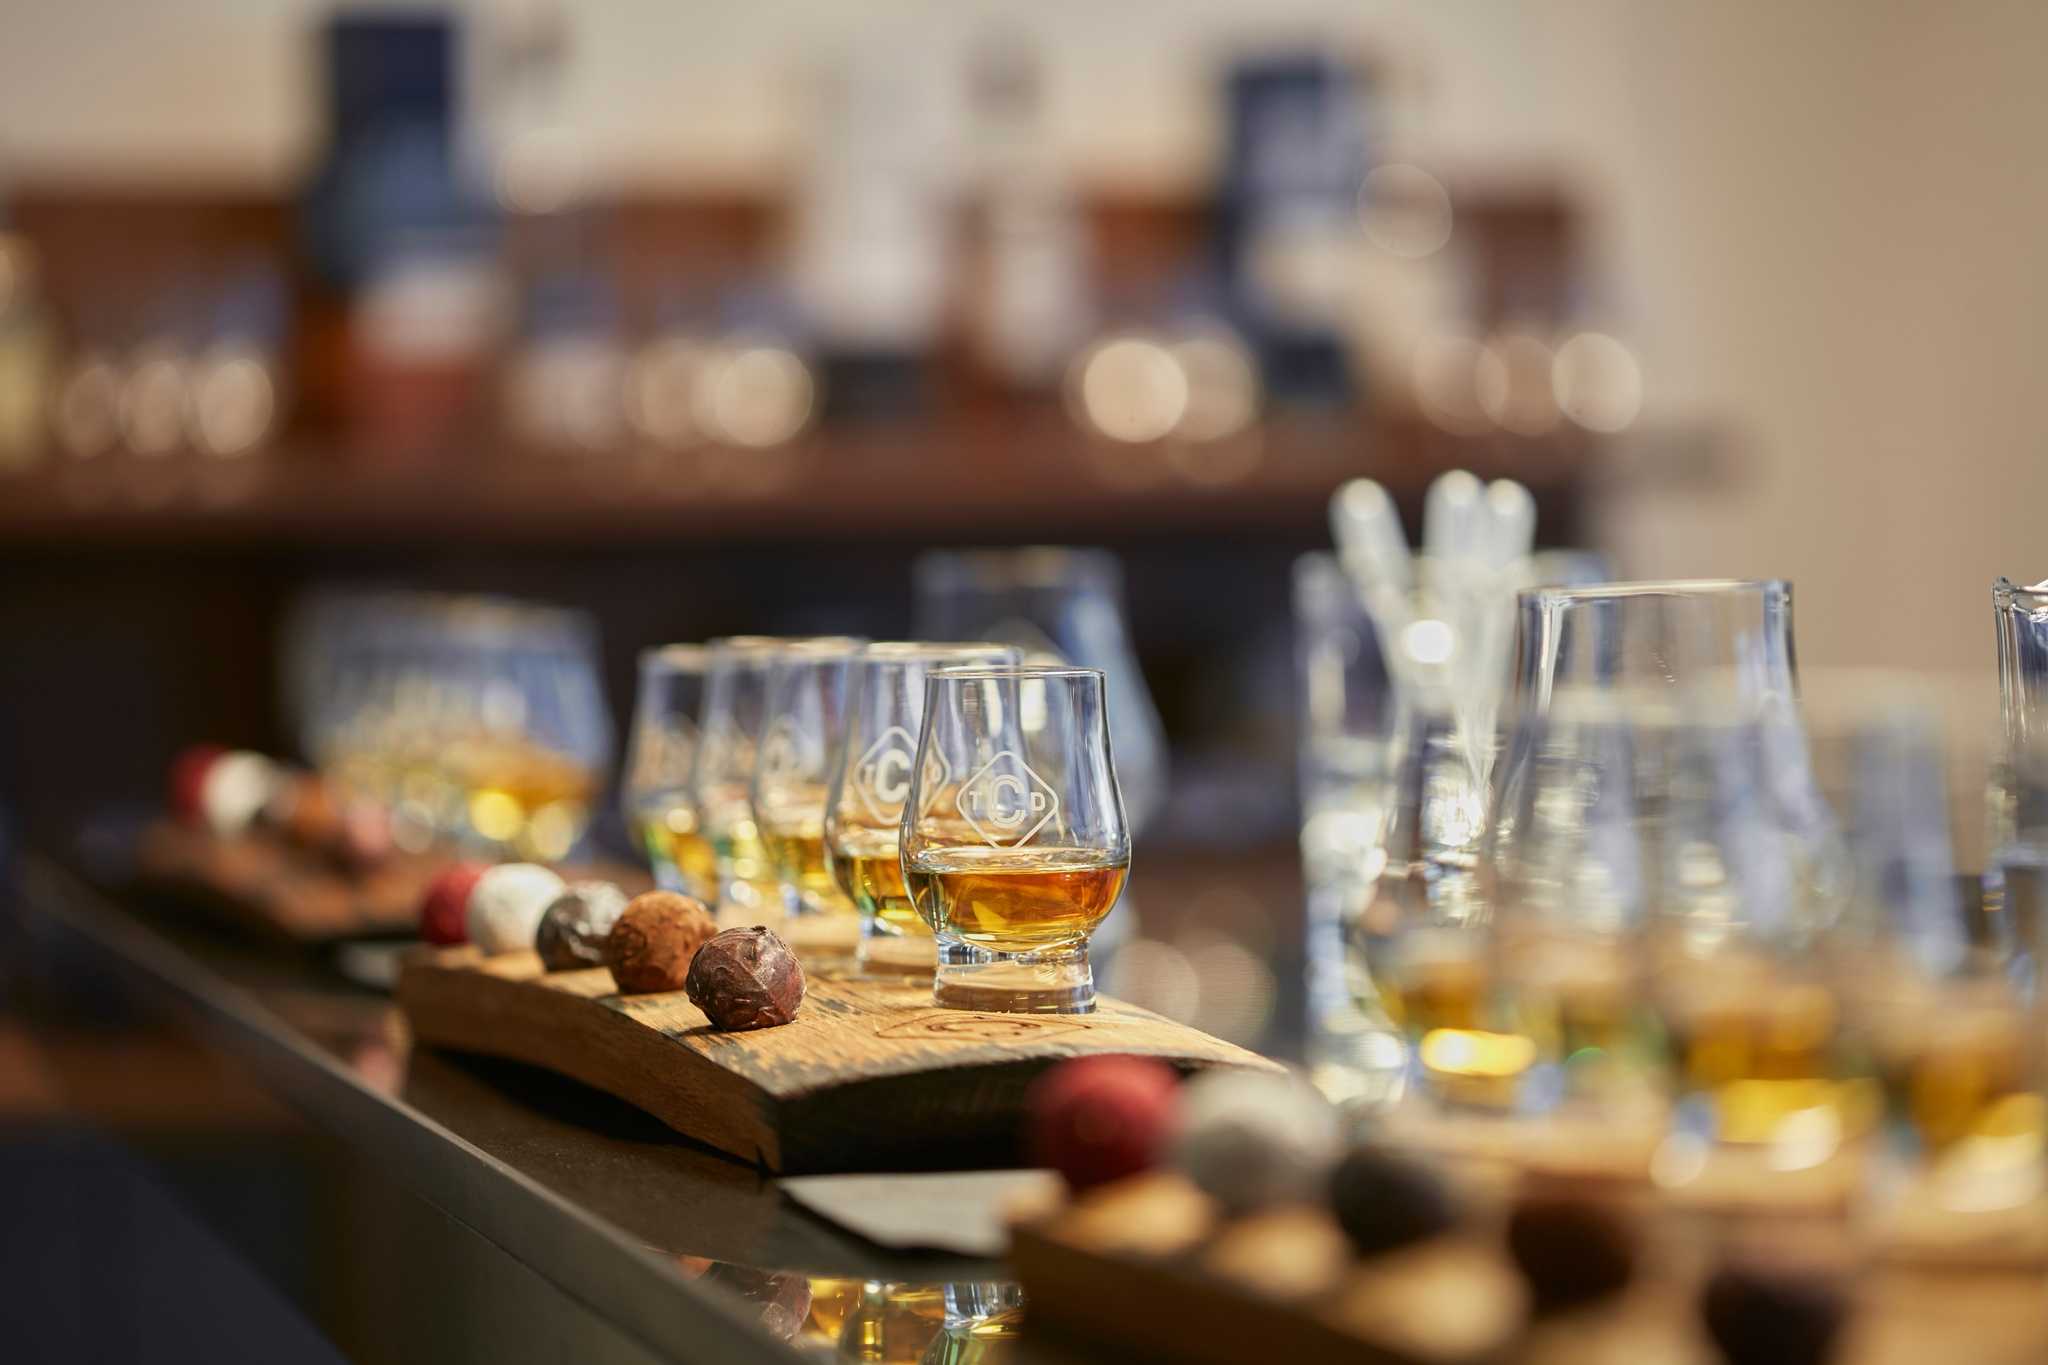 Dégustation de Whisky en Ligne  Distillerie de l'île de Raasay